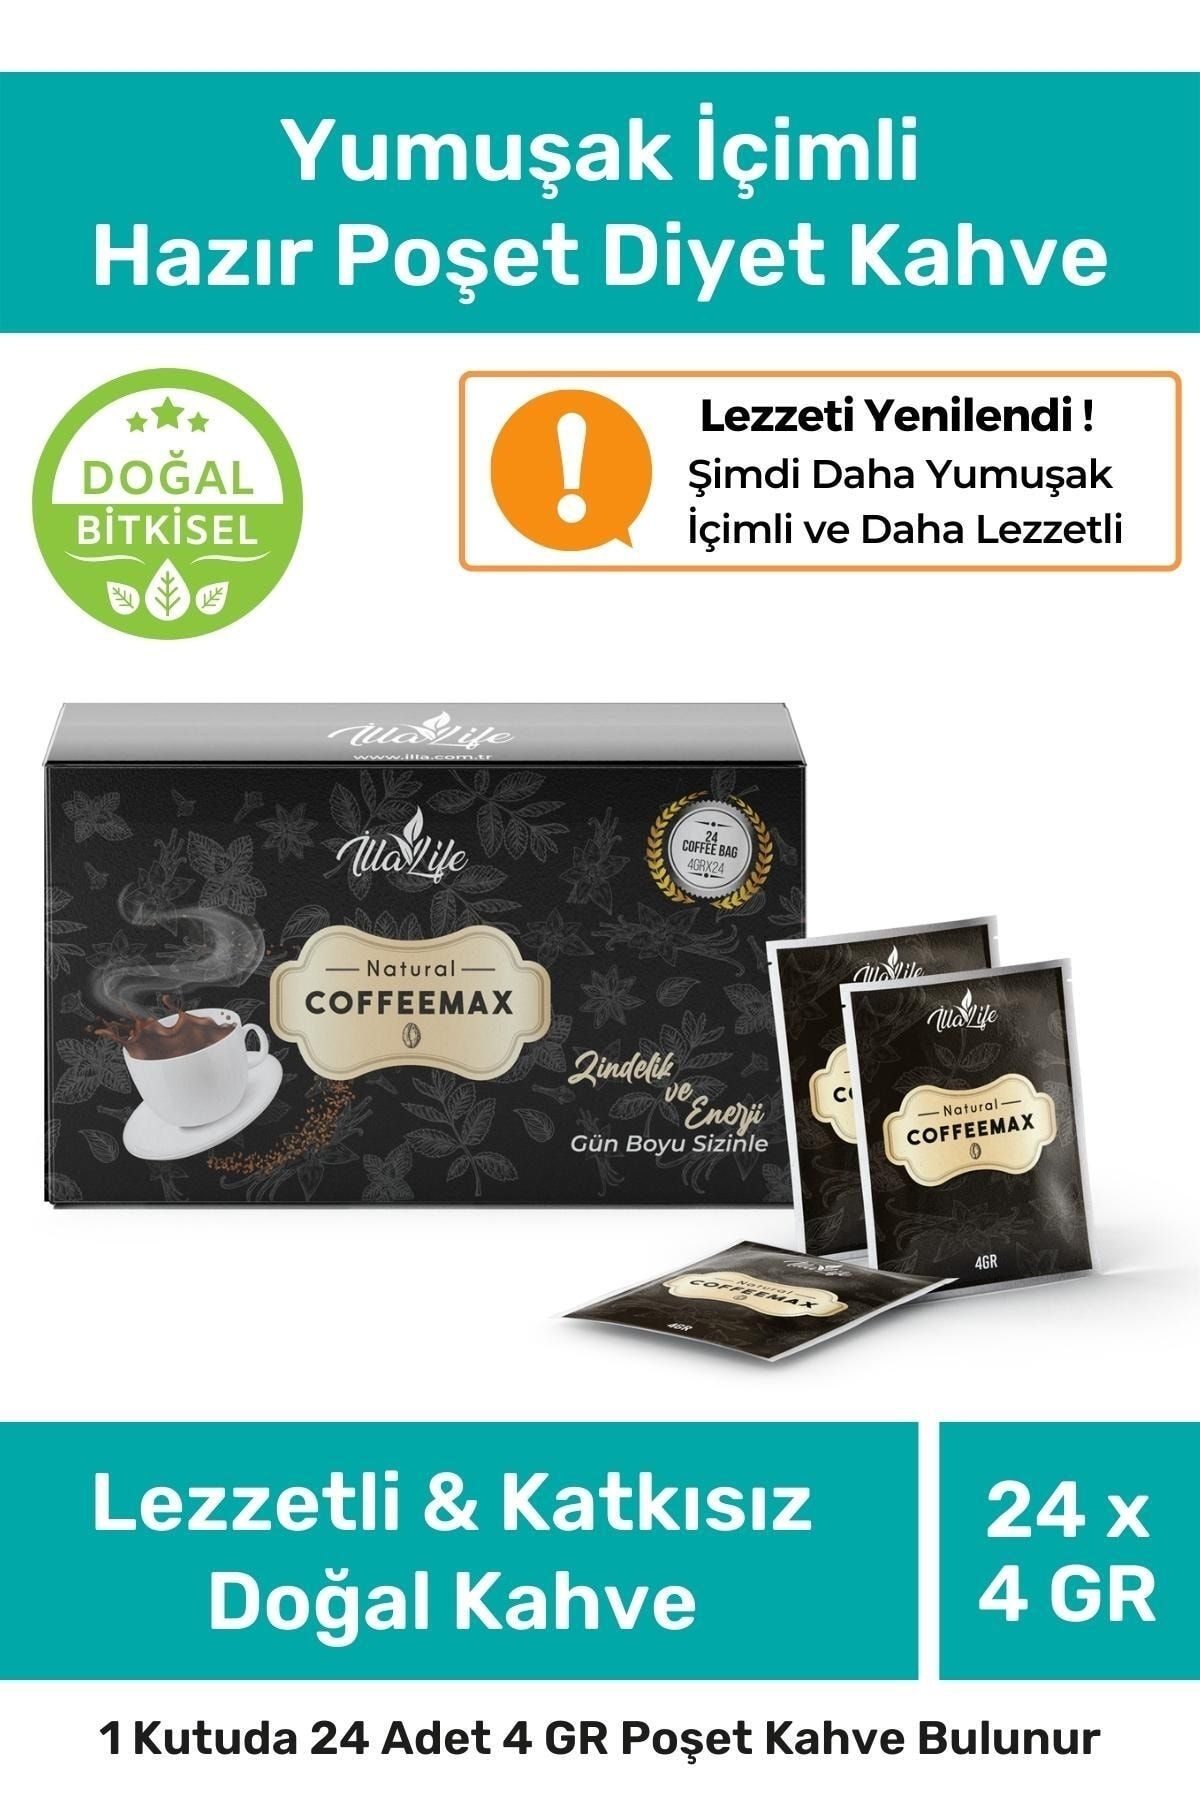 İlla Life Coffeemax Fit Yumuşak Içim Pratik Hazır Diyet Kahve Doğal & Katkısız Poşet Filtre Kahve 1 Kutu